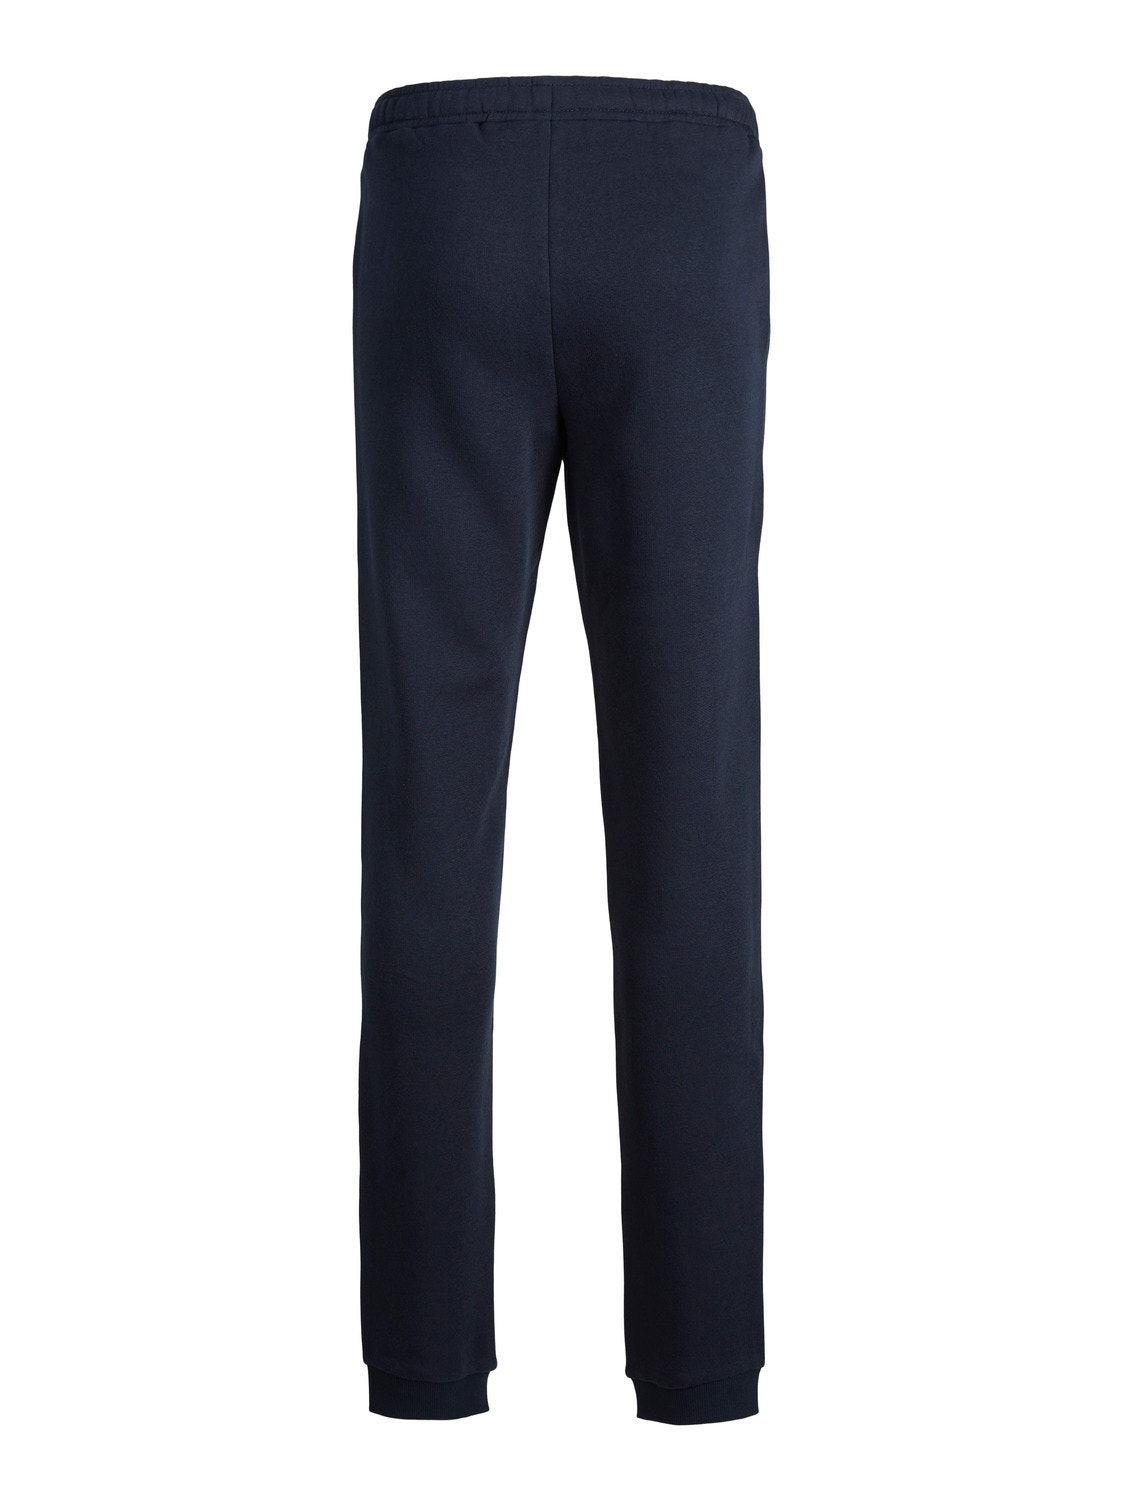 Jack & Jones Pantalon de survêtement Slim Fit Pour les garçons -Navy Blazer - 12179798